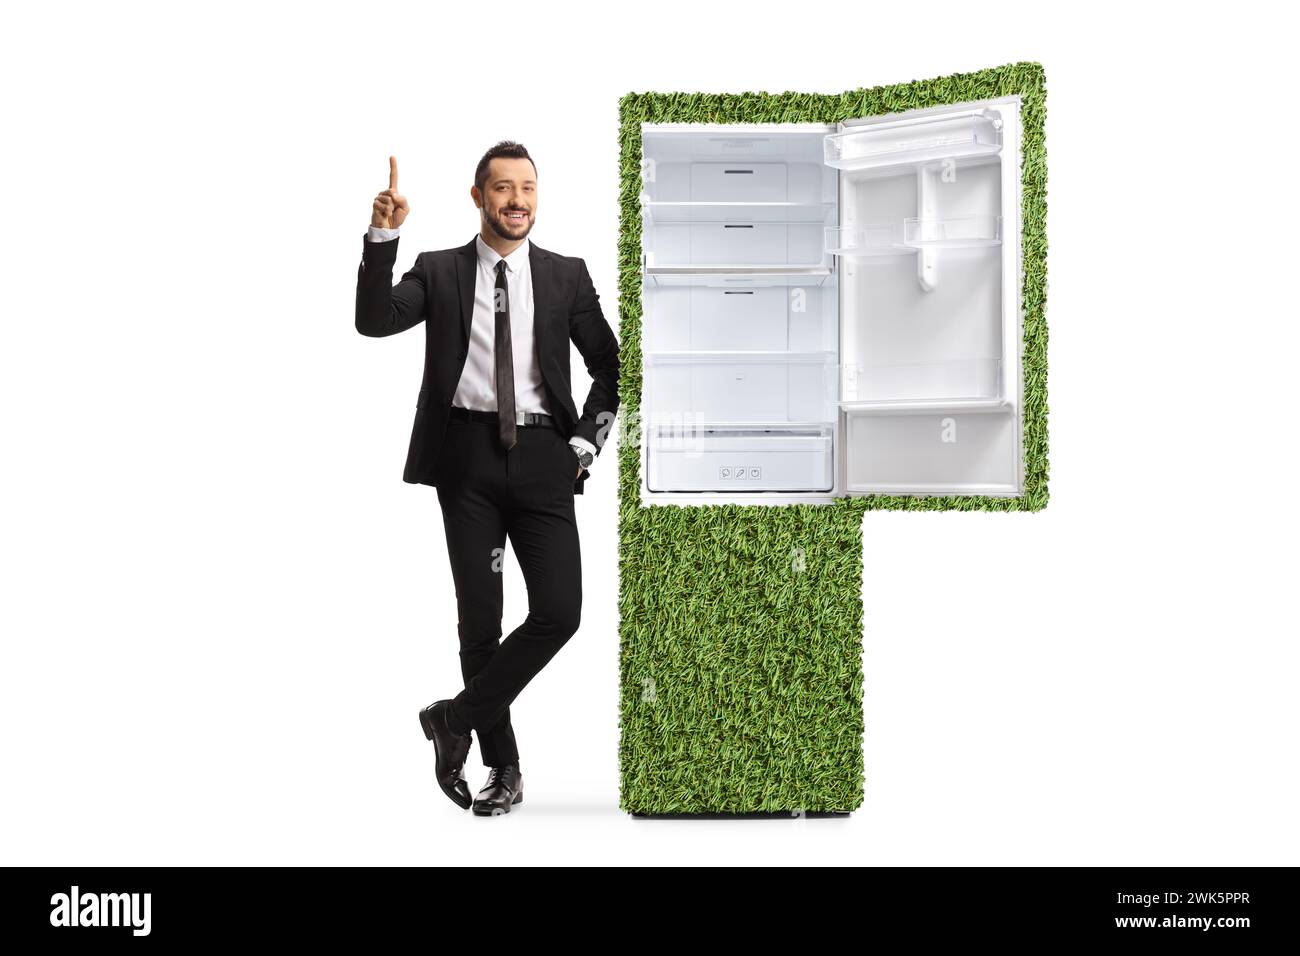 Directeur des ventes s'appuyant sur un réfrigérateur écoénergétique et pointant isolé sur fond blanc Banque D'Images